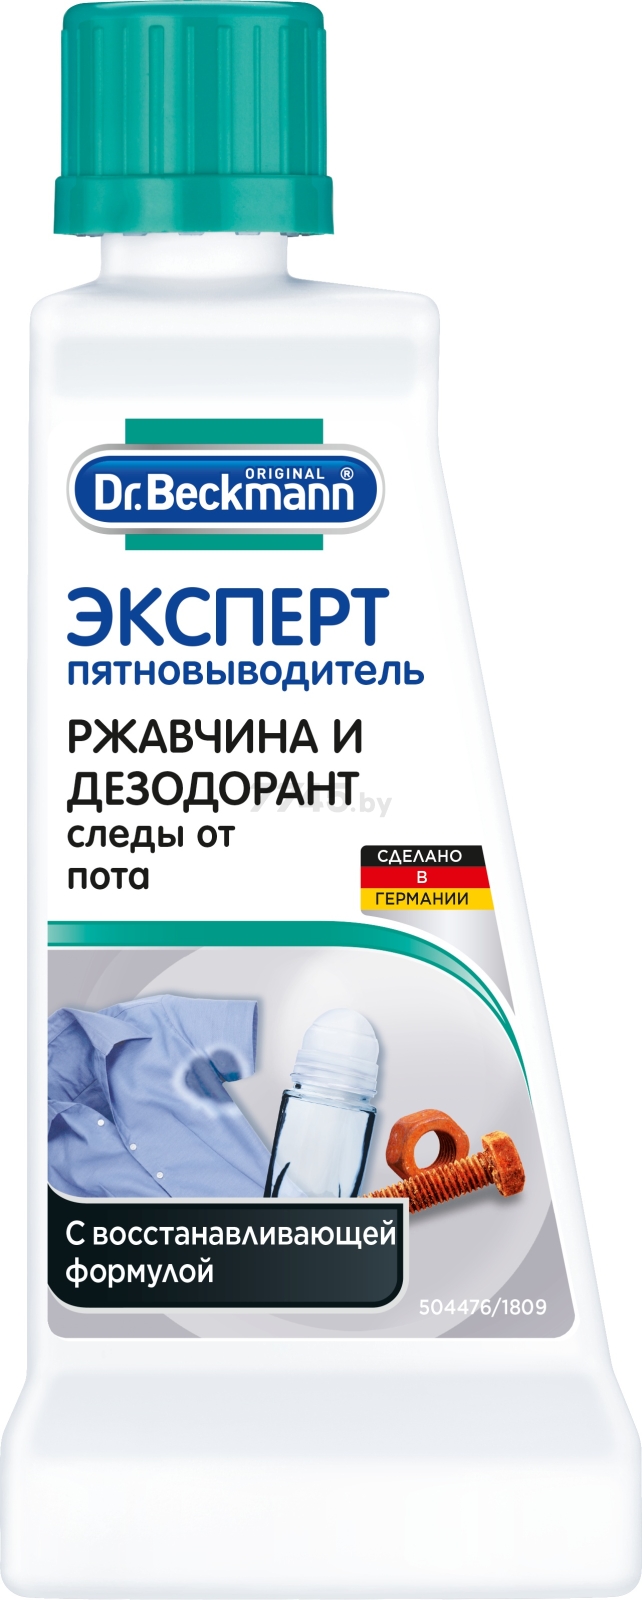 Пятновыводитель DR.BECKMANN Эксперт Ржавчина и дезодорант 50 мл (4008455004099)